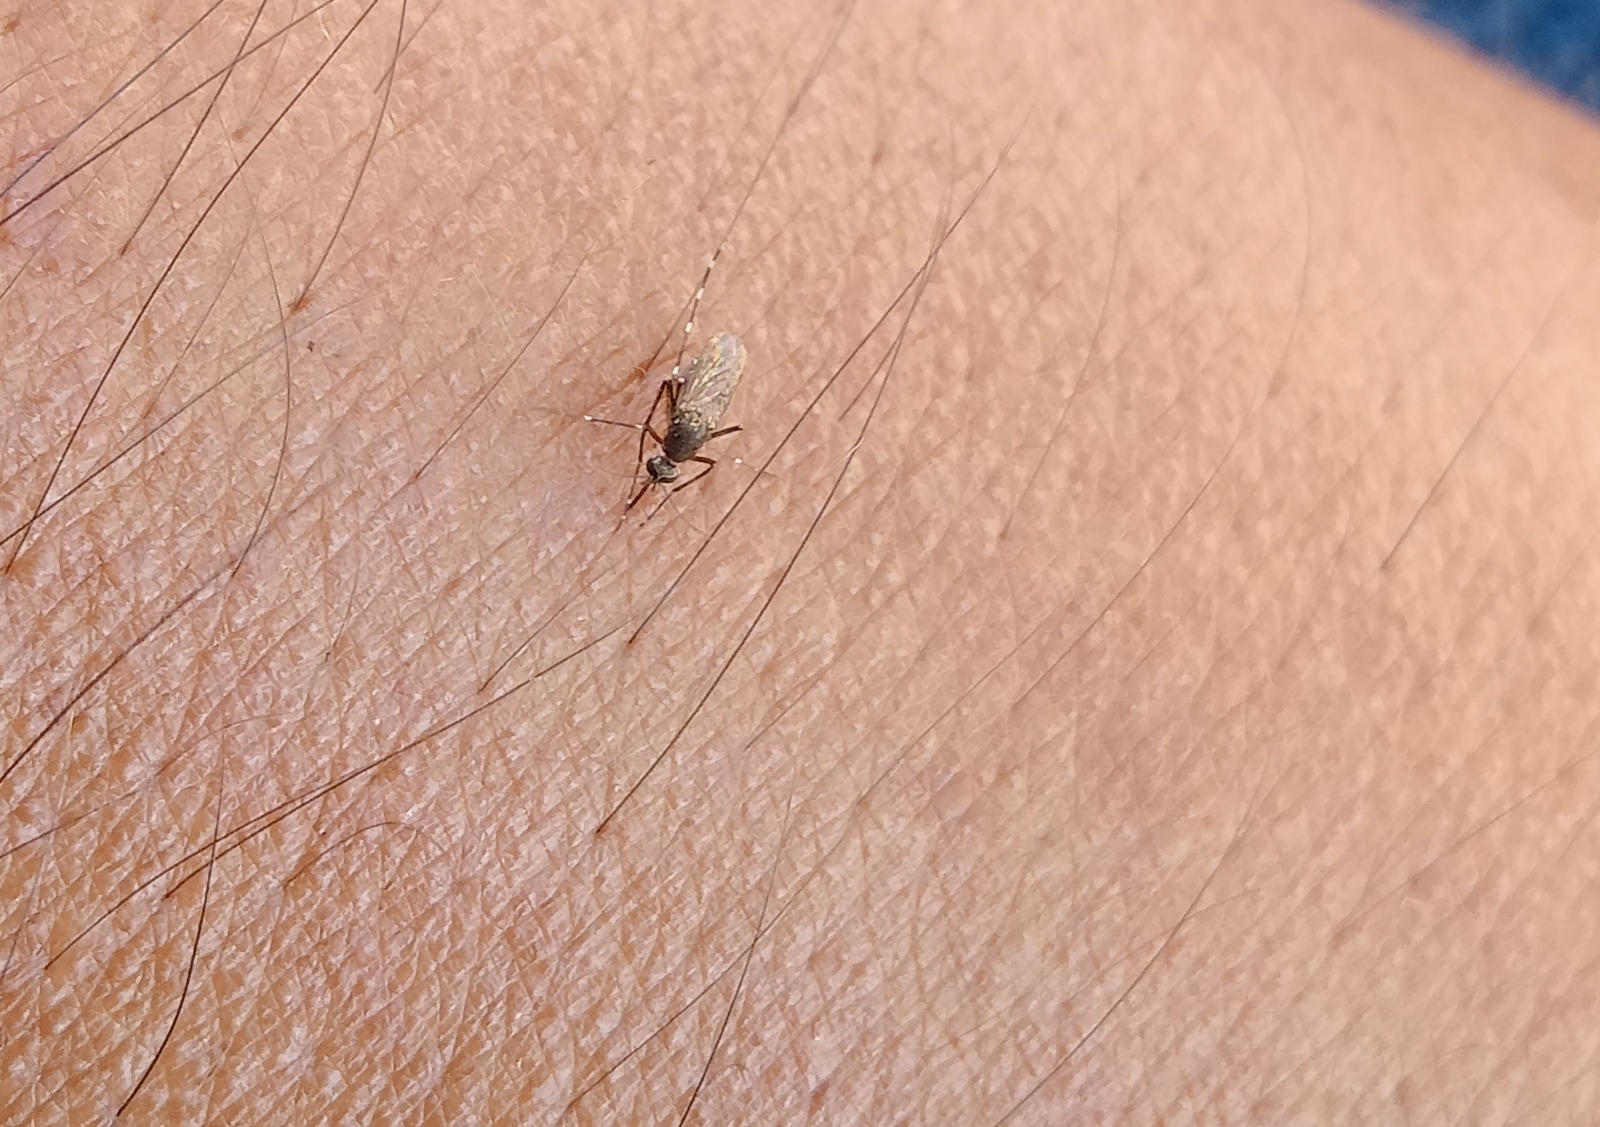 Plaga de mosquitos en la Península de Atasta